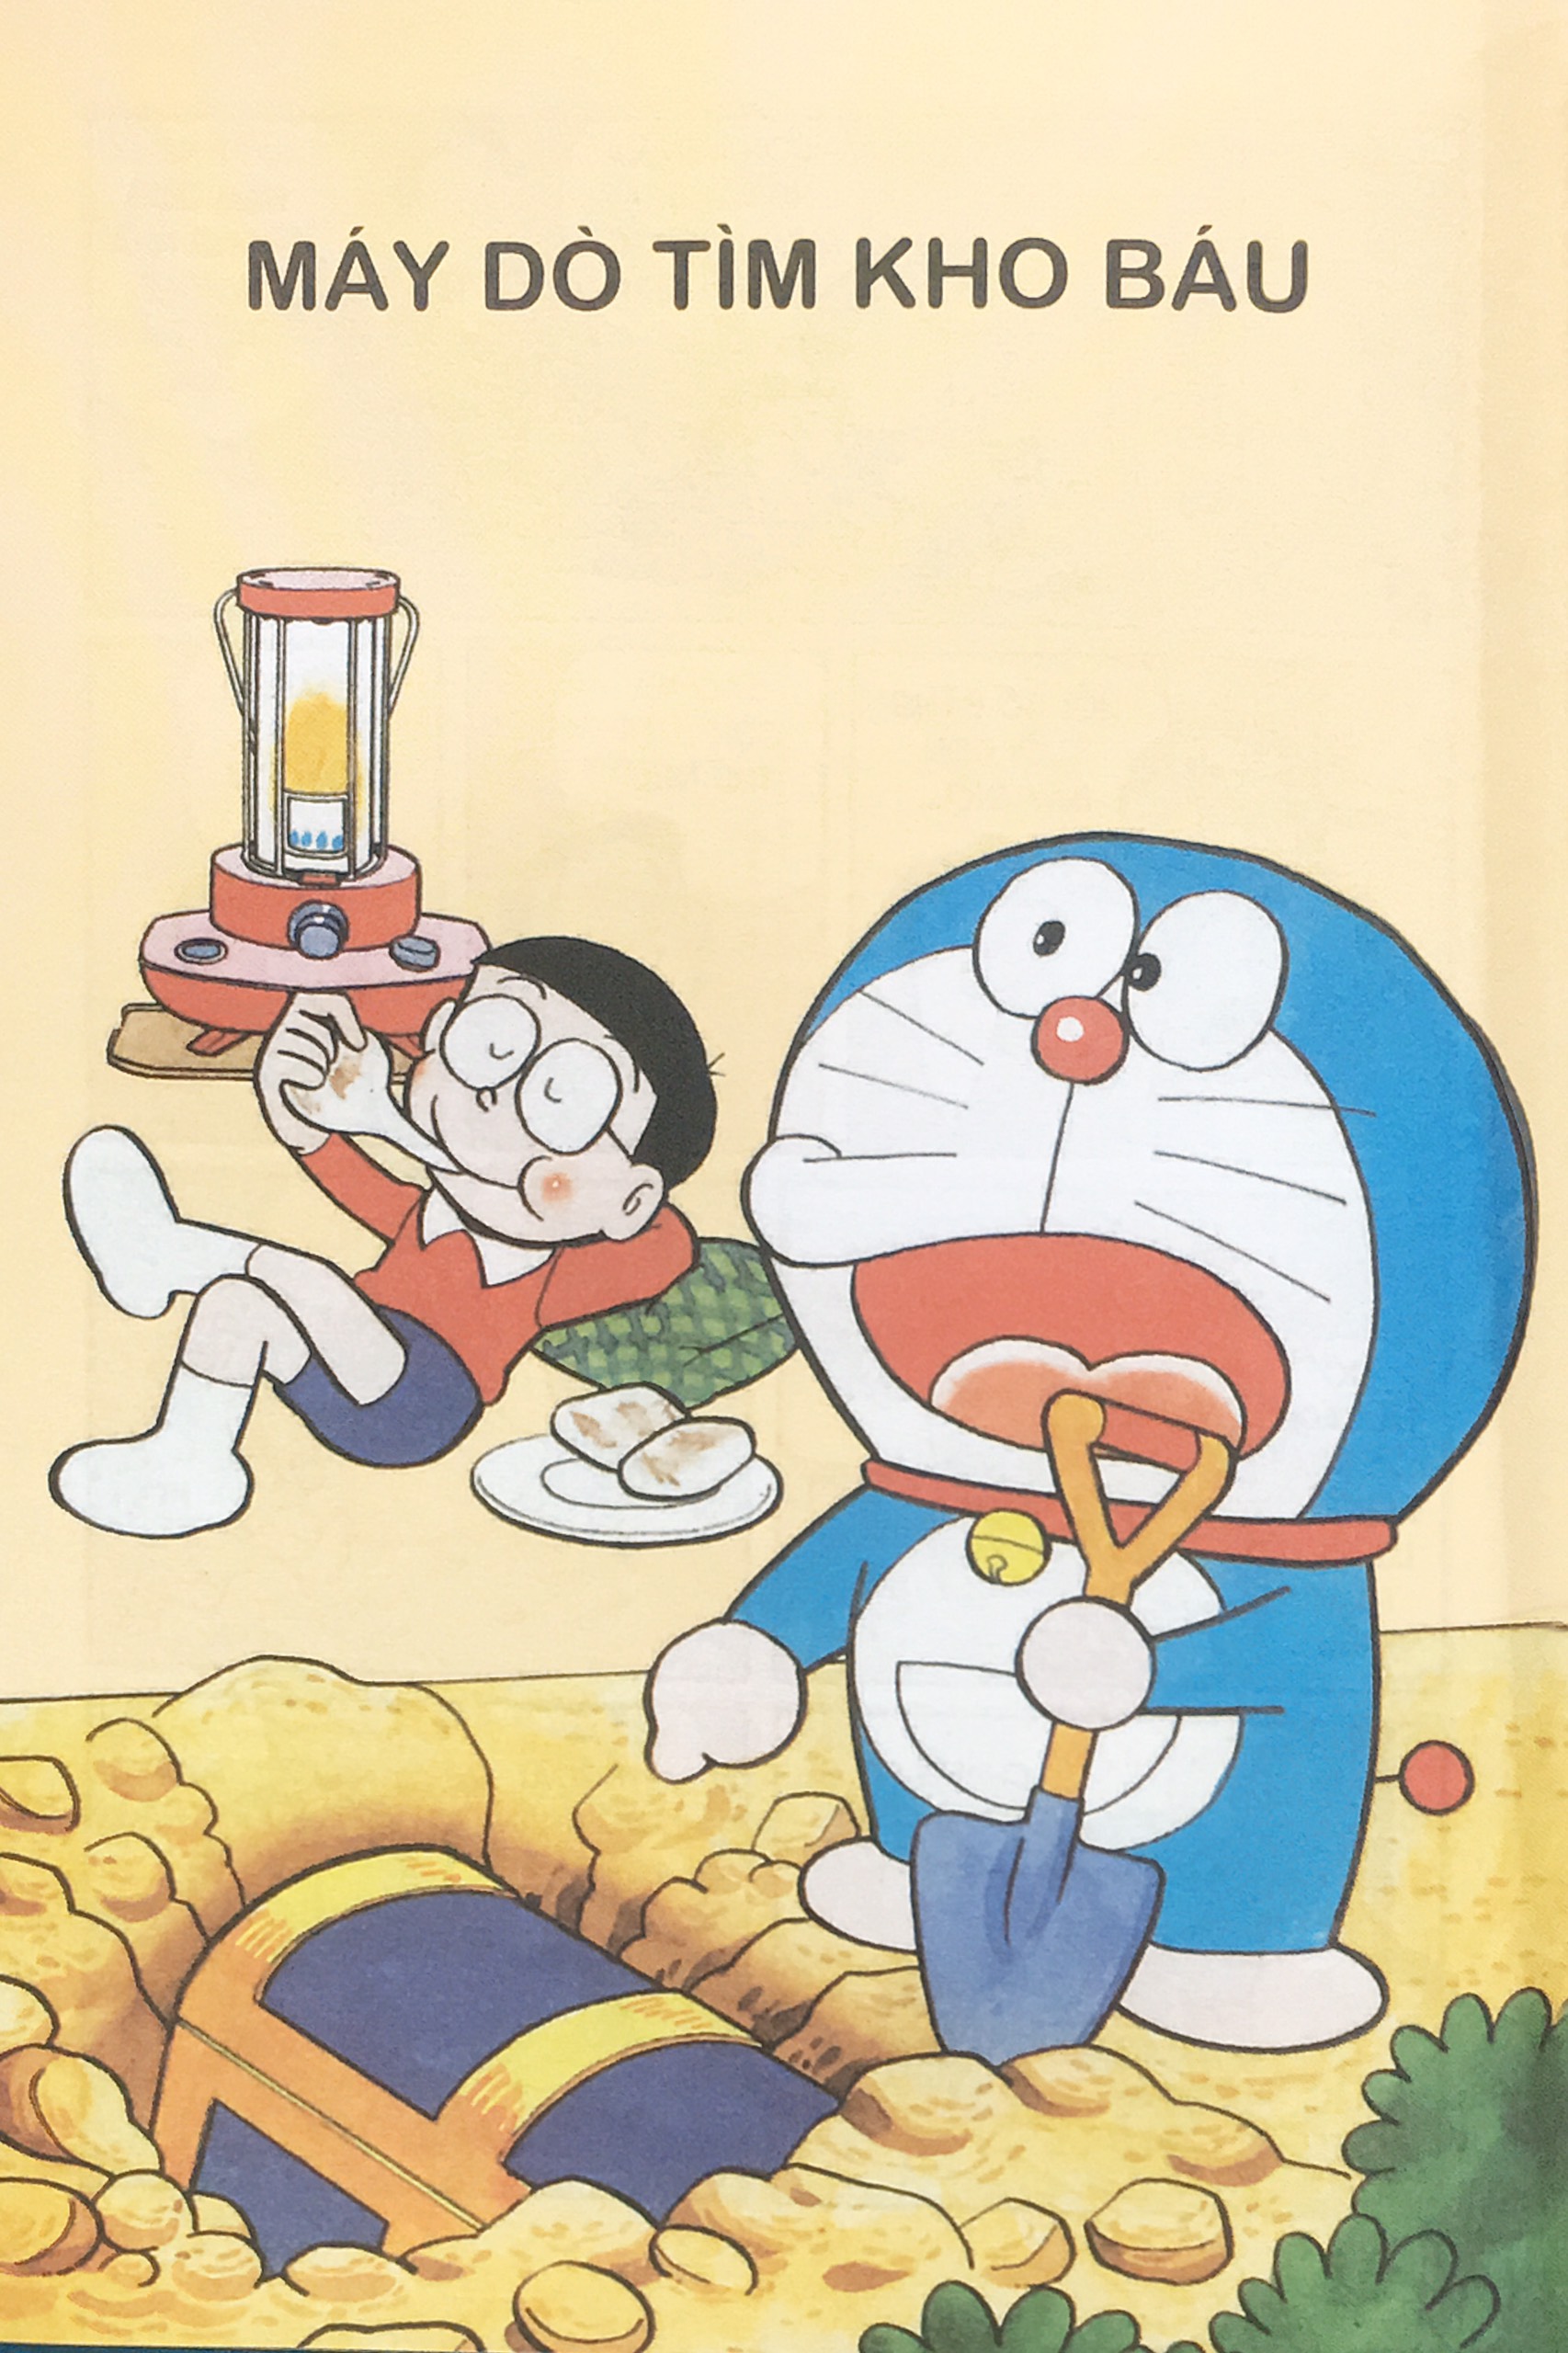 Truyện tranh Doraemon: Với những ai yêu thích truyện tranh Doraemon, hãy đến và thưởng thức những hình ảnh đầy màu sắc và tươi vui. Trong truyện, những nhân vật dễ thương bổ sung vào những hiểu biết của chúng ta về tình bạn và gia đình. Hãy cùng tìm hiểu thêm về những tình huống hấp dẫn trong truyện tranh Doraemon.